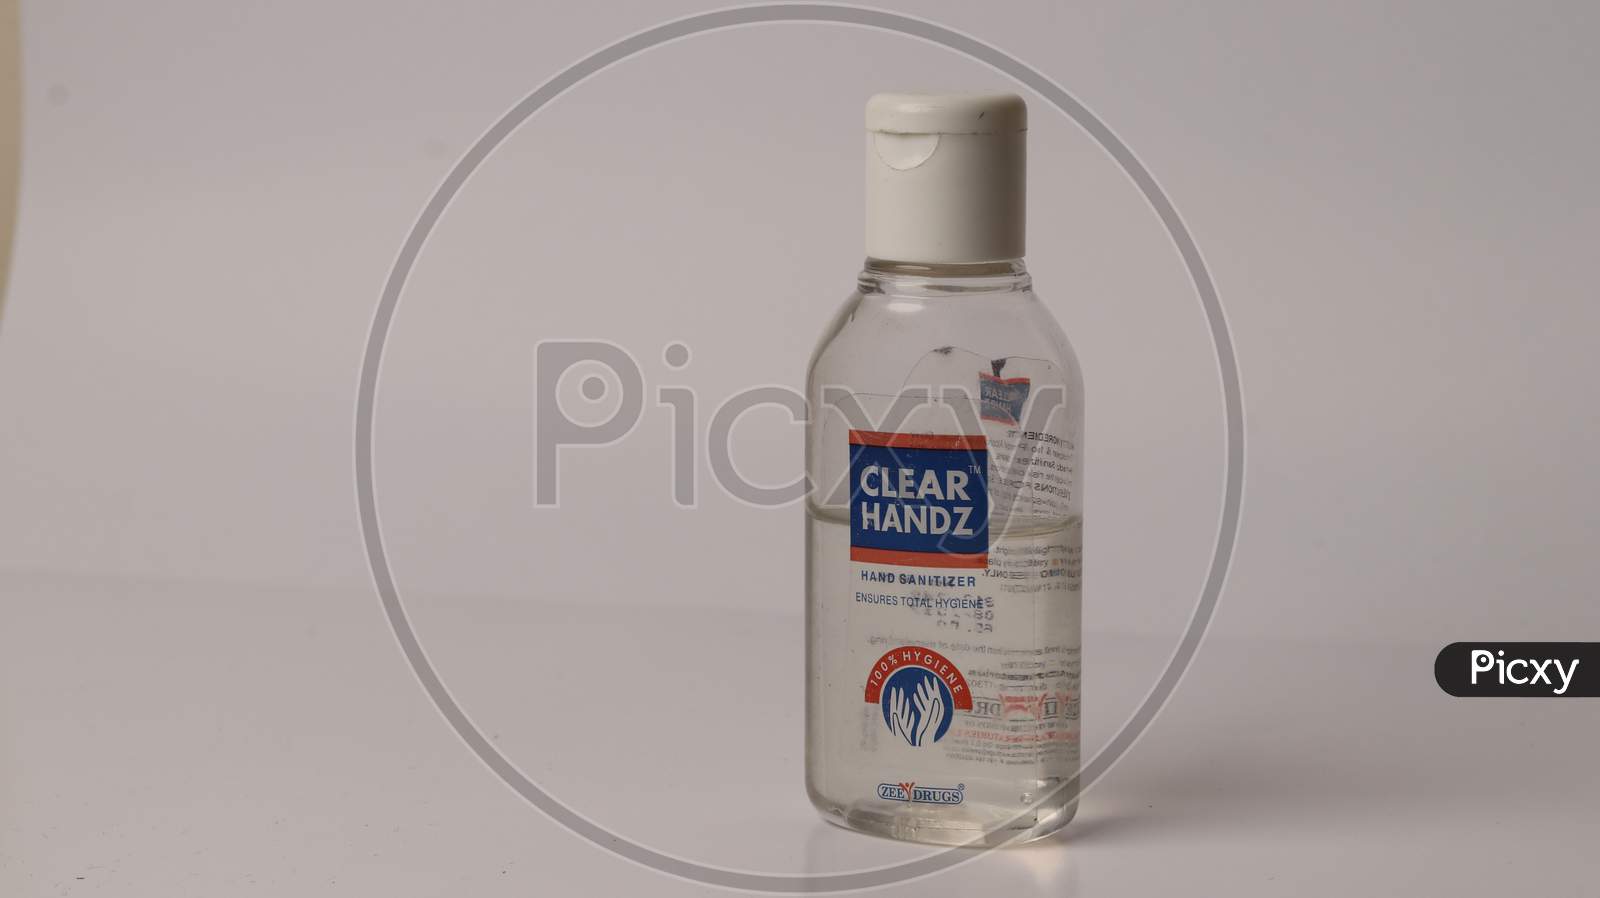 Hand Sanitizer from clear handz